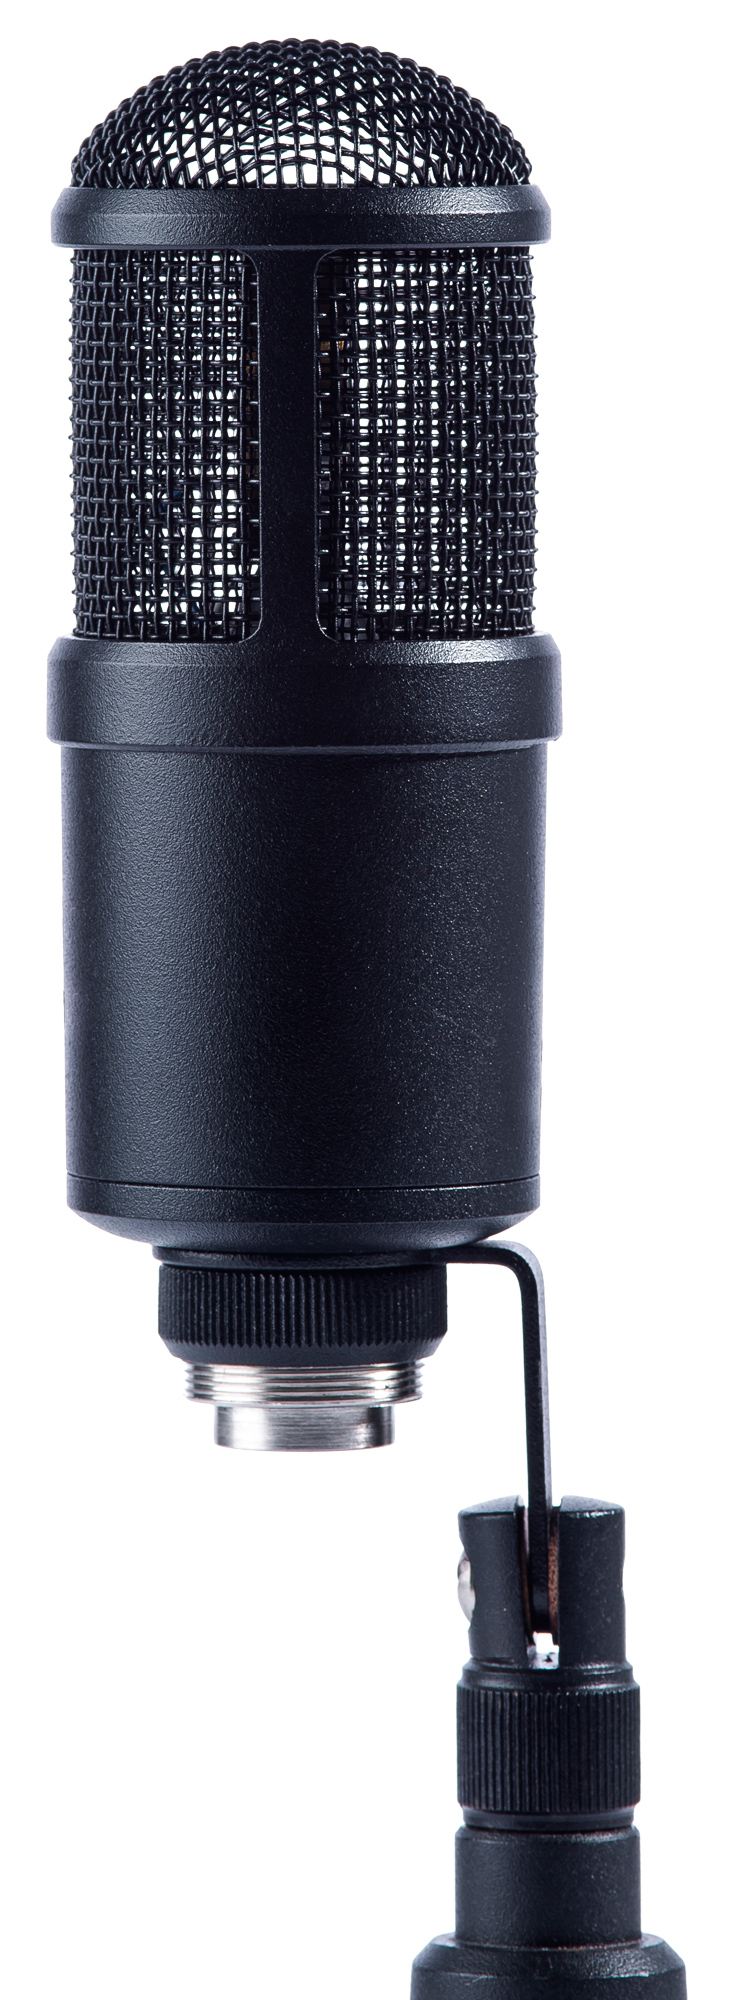 Октава МК-519 Профессиональный студийный конденсаторный микрофон с широким капсюлем